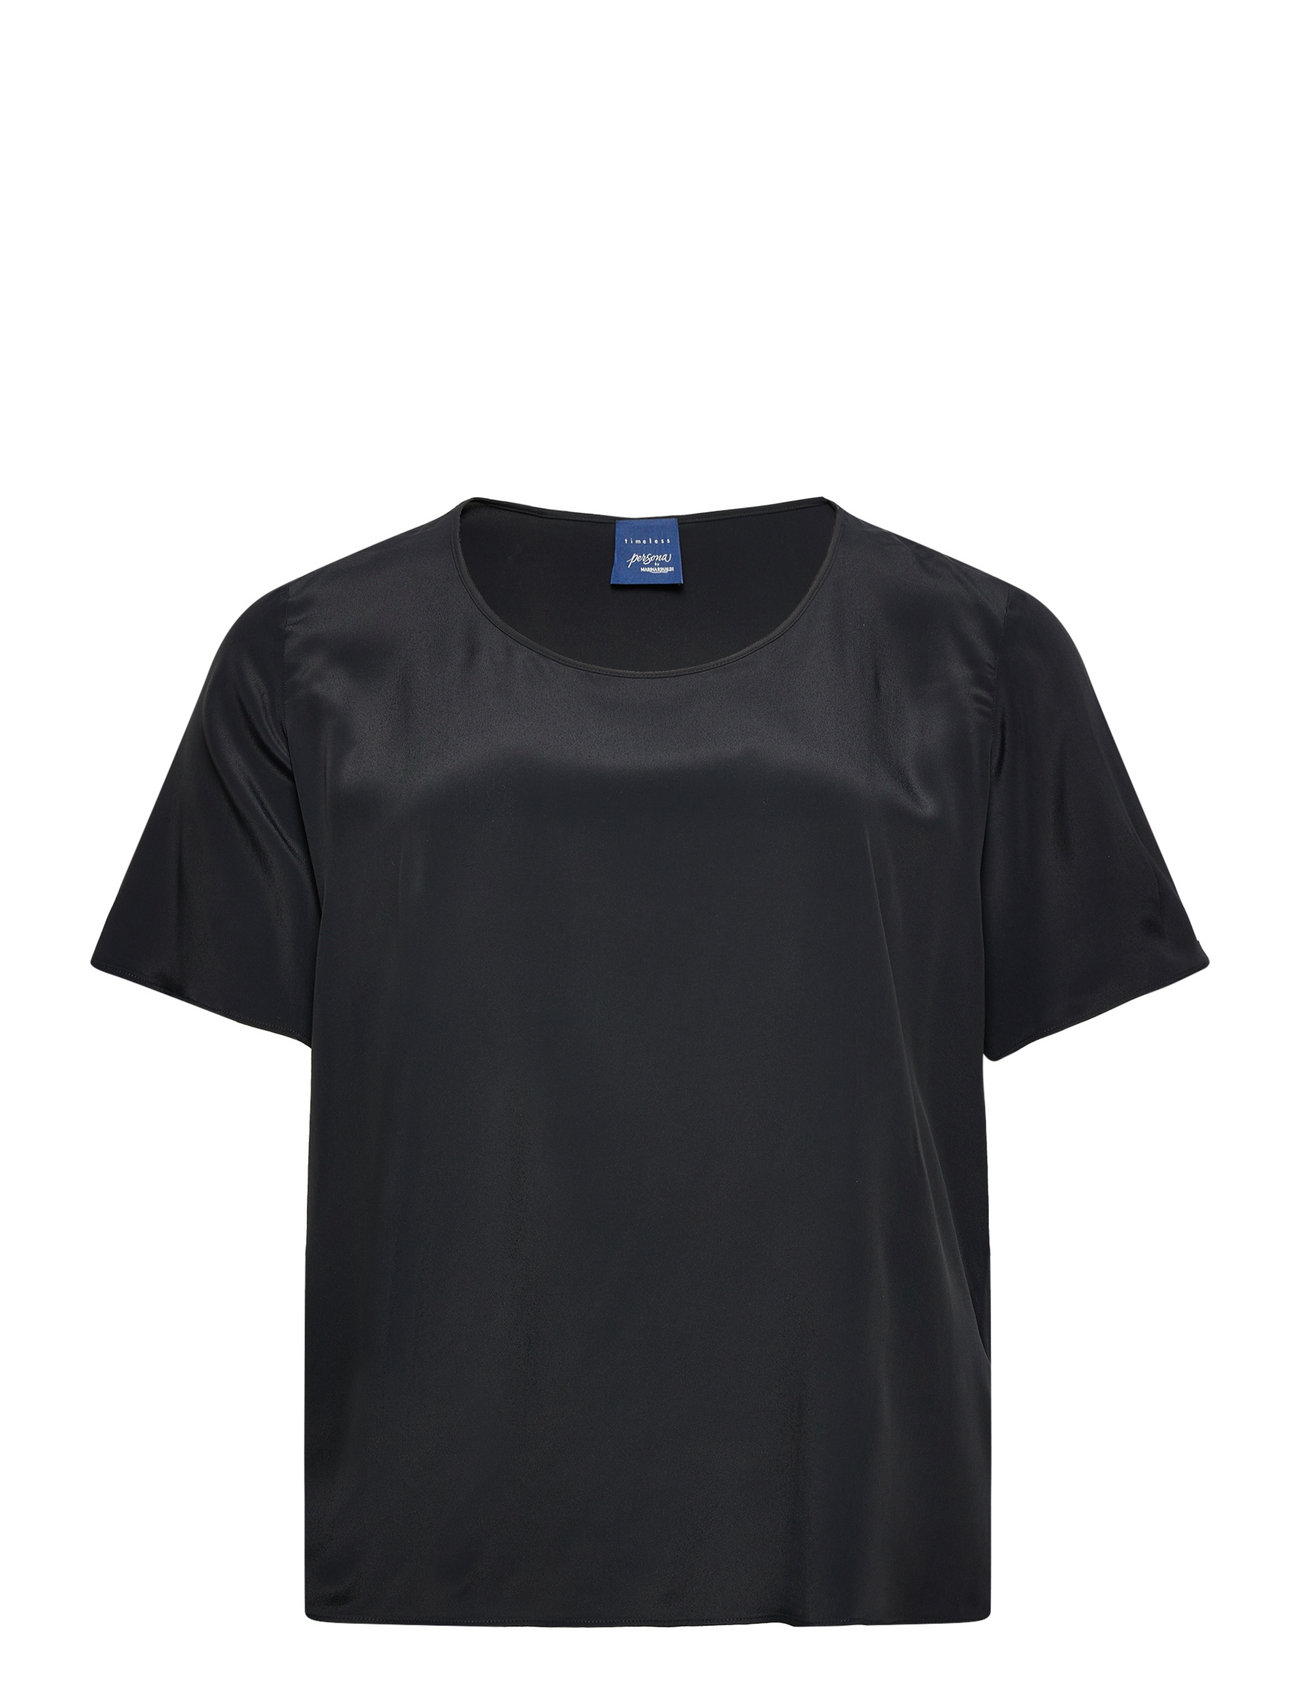 Bella Tops T-shirts & Tops Short-sleeved Black Persona By Marina Rinaldi